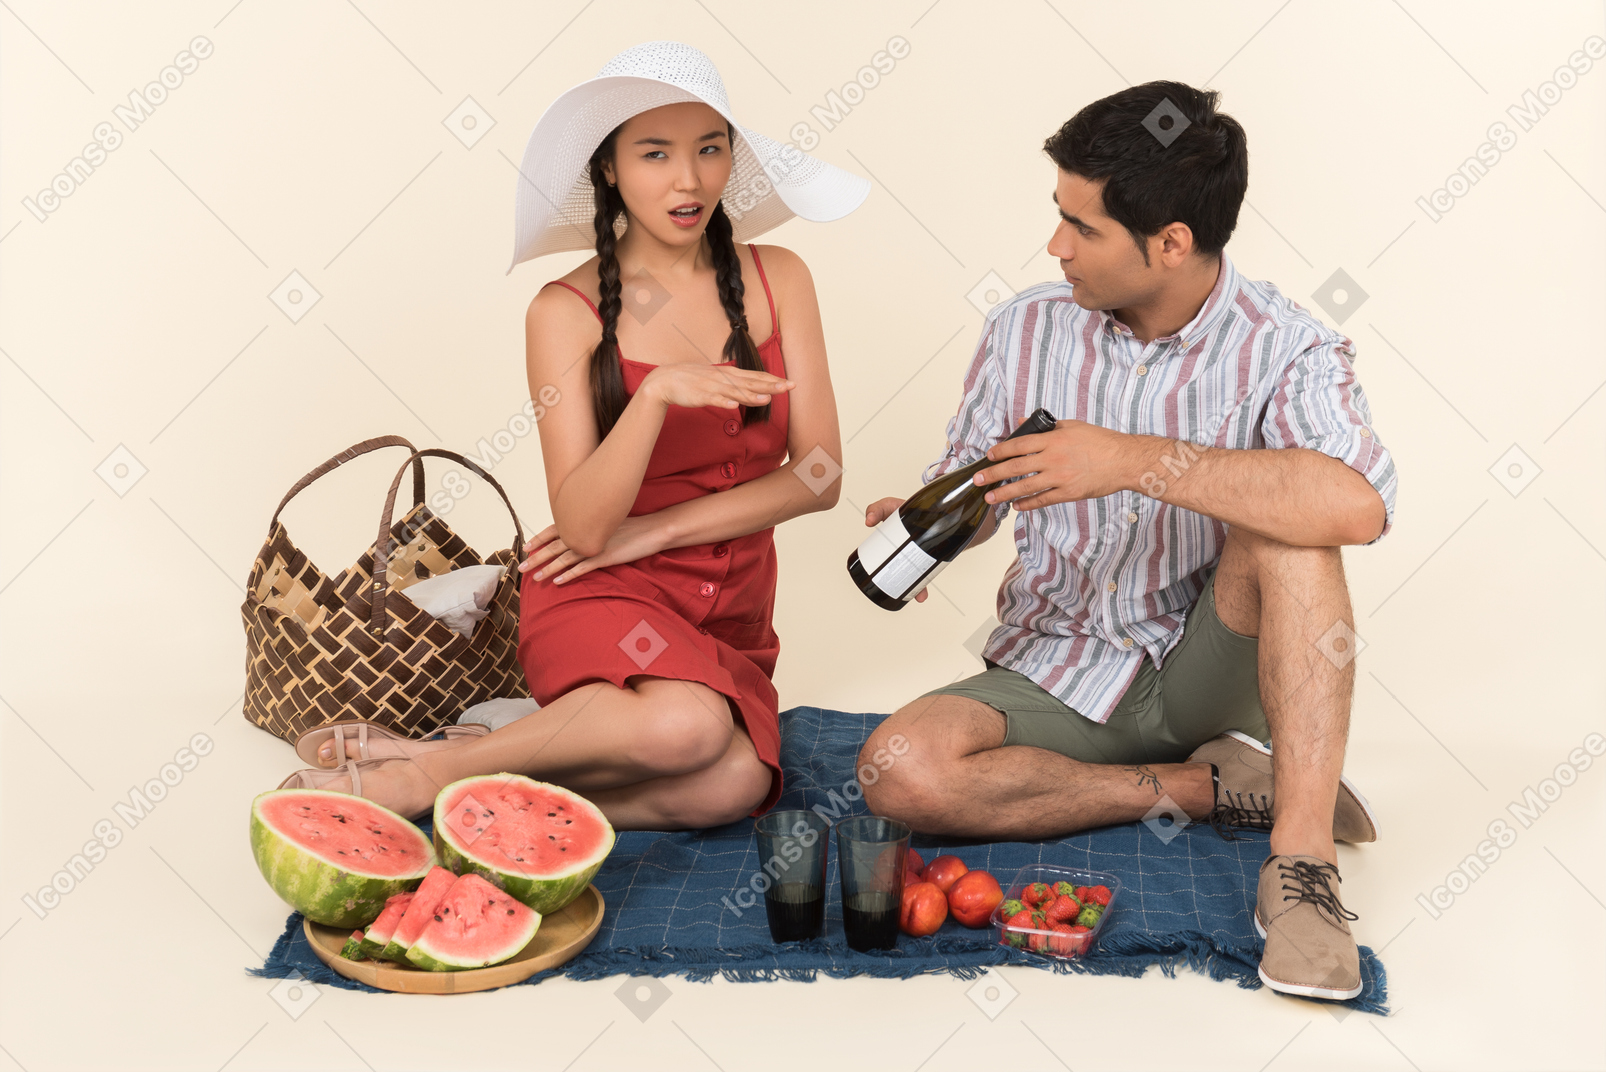 Junger mann zeigt einer frau, die empört zu sein scheint, eine flasche wein auf einem picknick